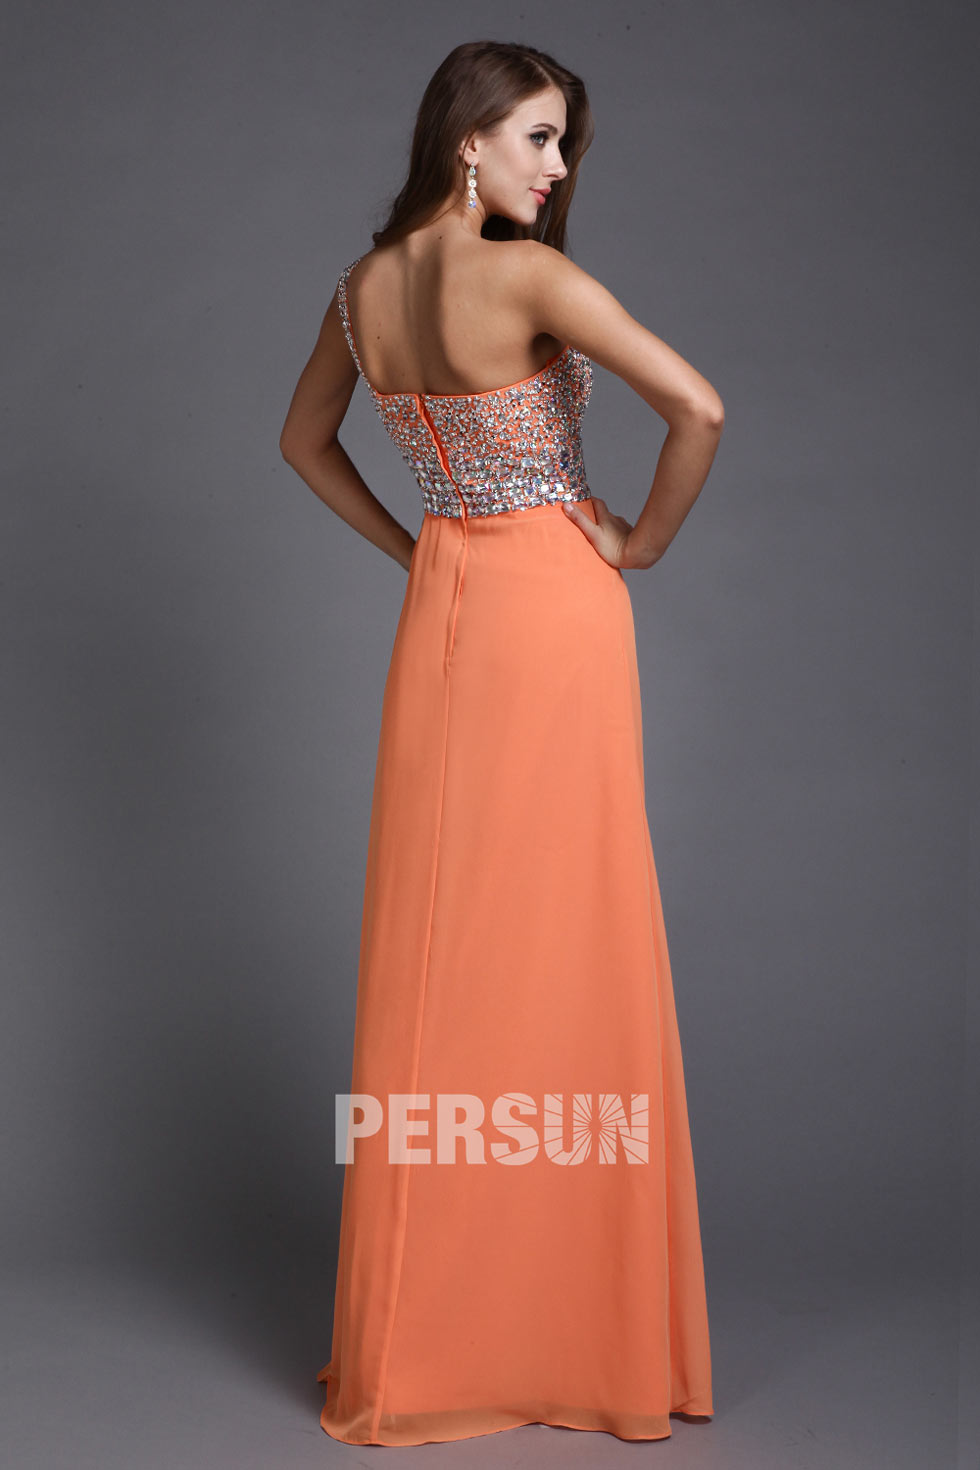 achat en ligne robe orange à haut en strass faite sur mesure